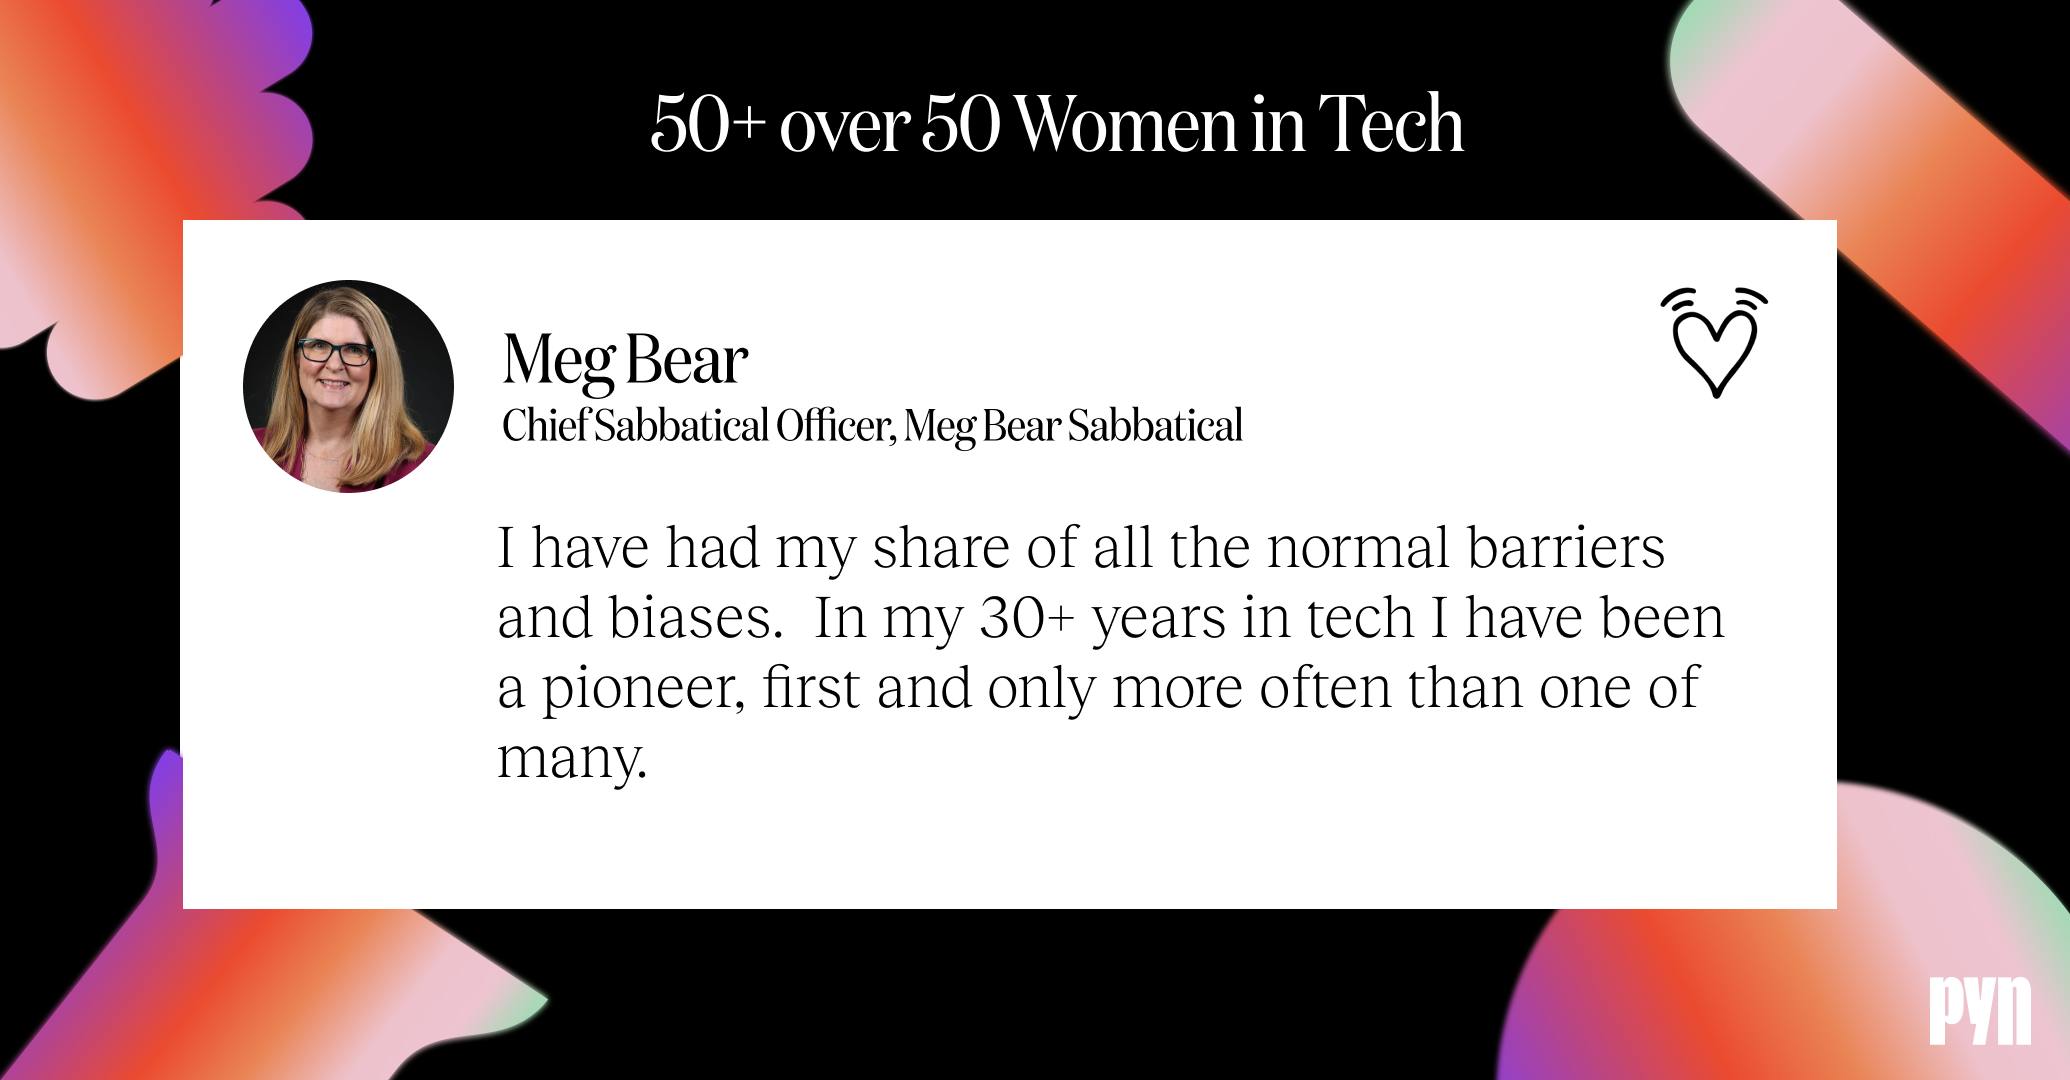 Meg Bear